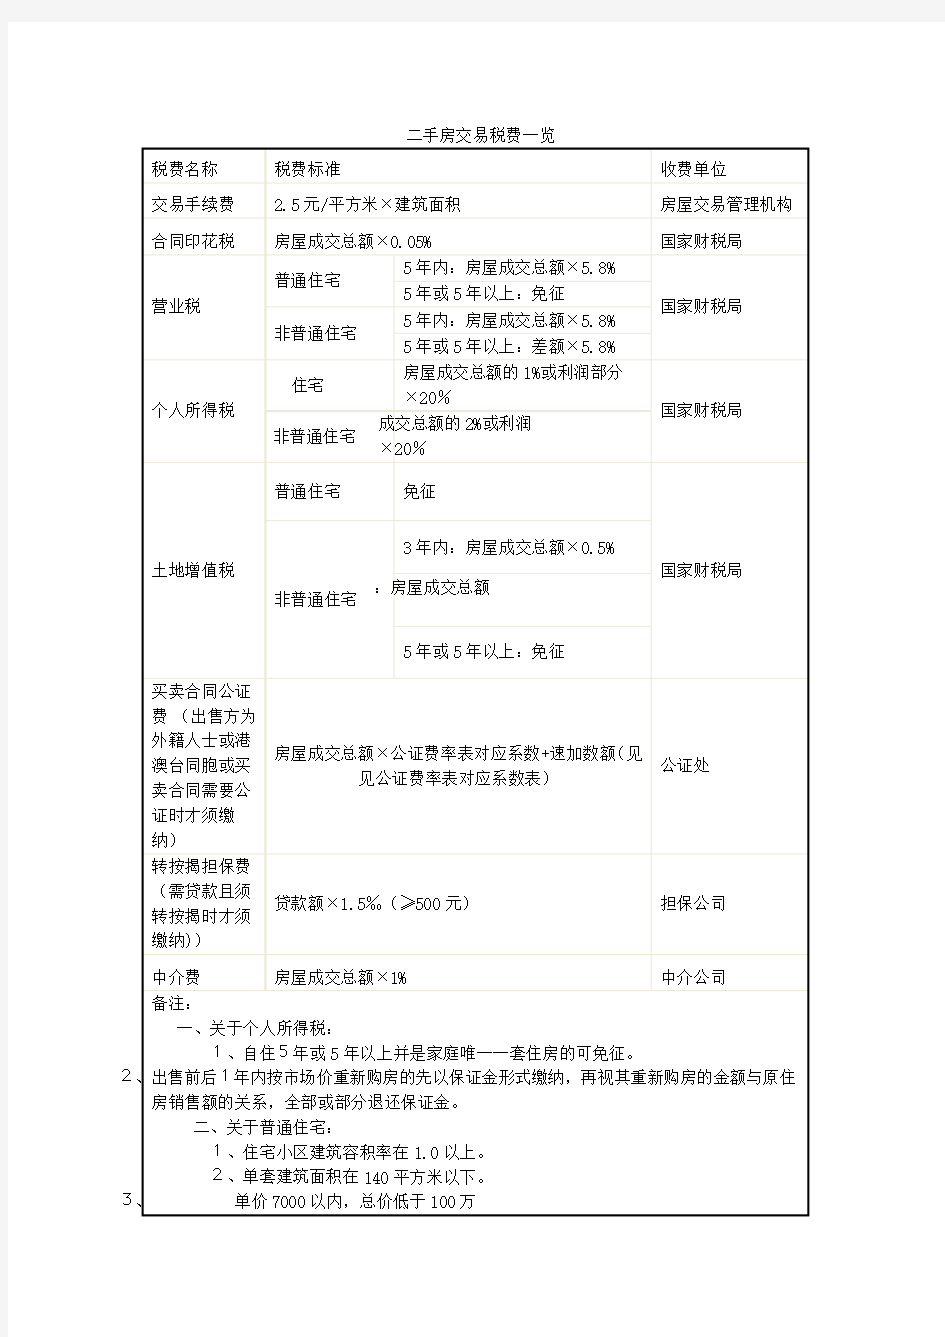 武汉市二手房交易税费表